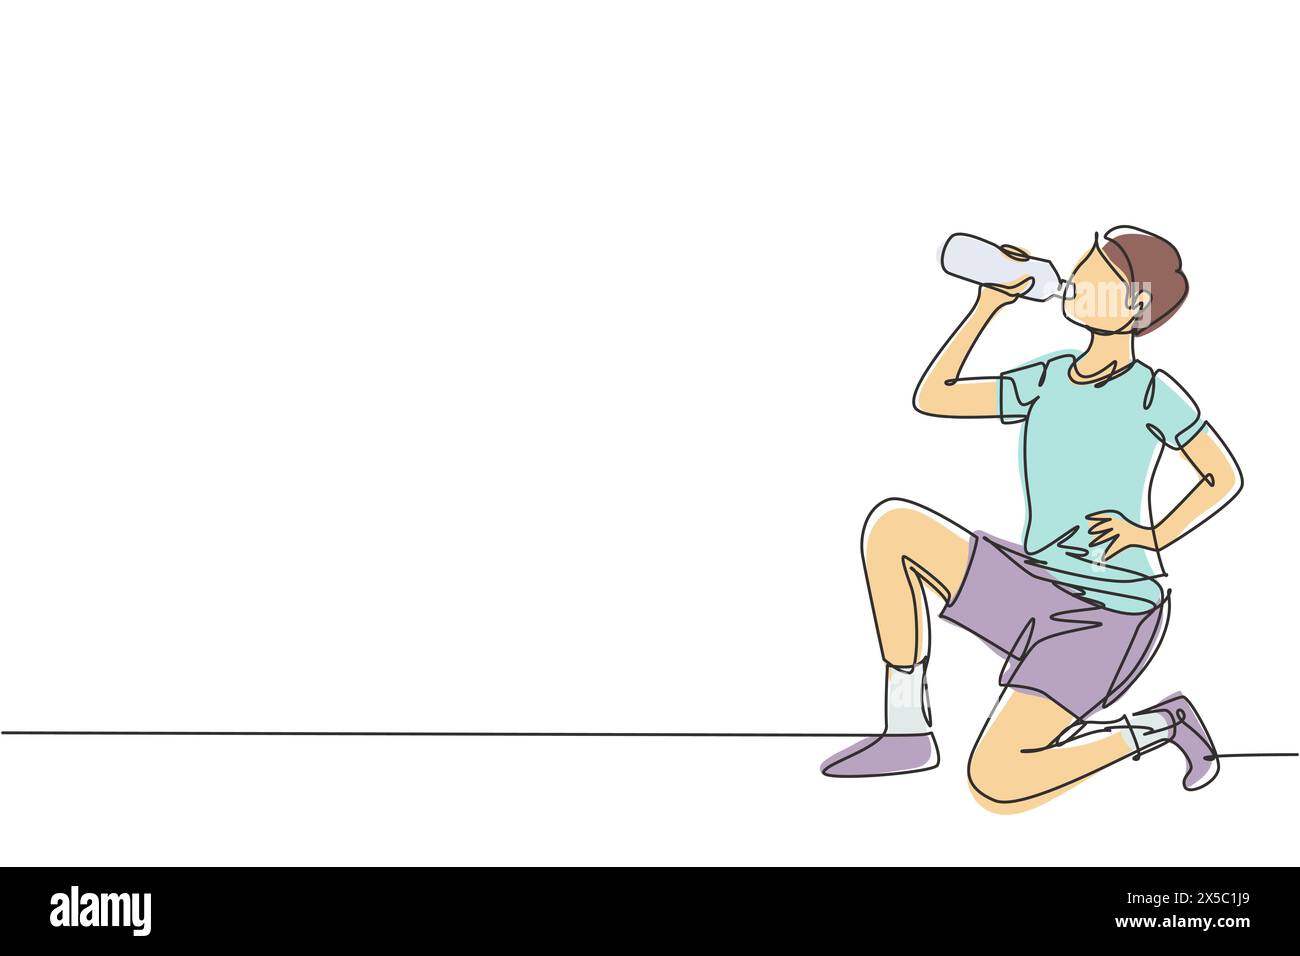 Una sola linea che attira il giovane che beve acqua in bottiglia mentre accovacciano dopo aver corso. L'esercizio mattutino provoca sete e disidratazione. conti moderni Illustrazione Vettoriale